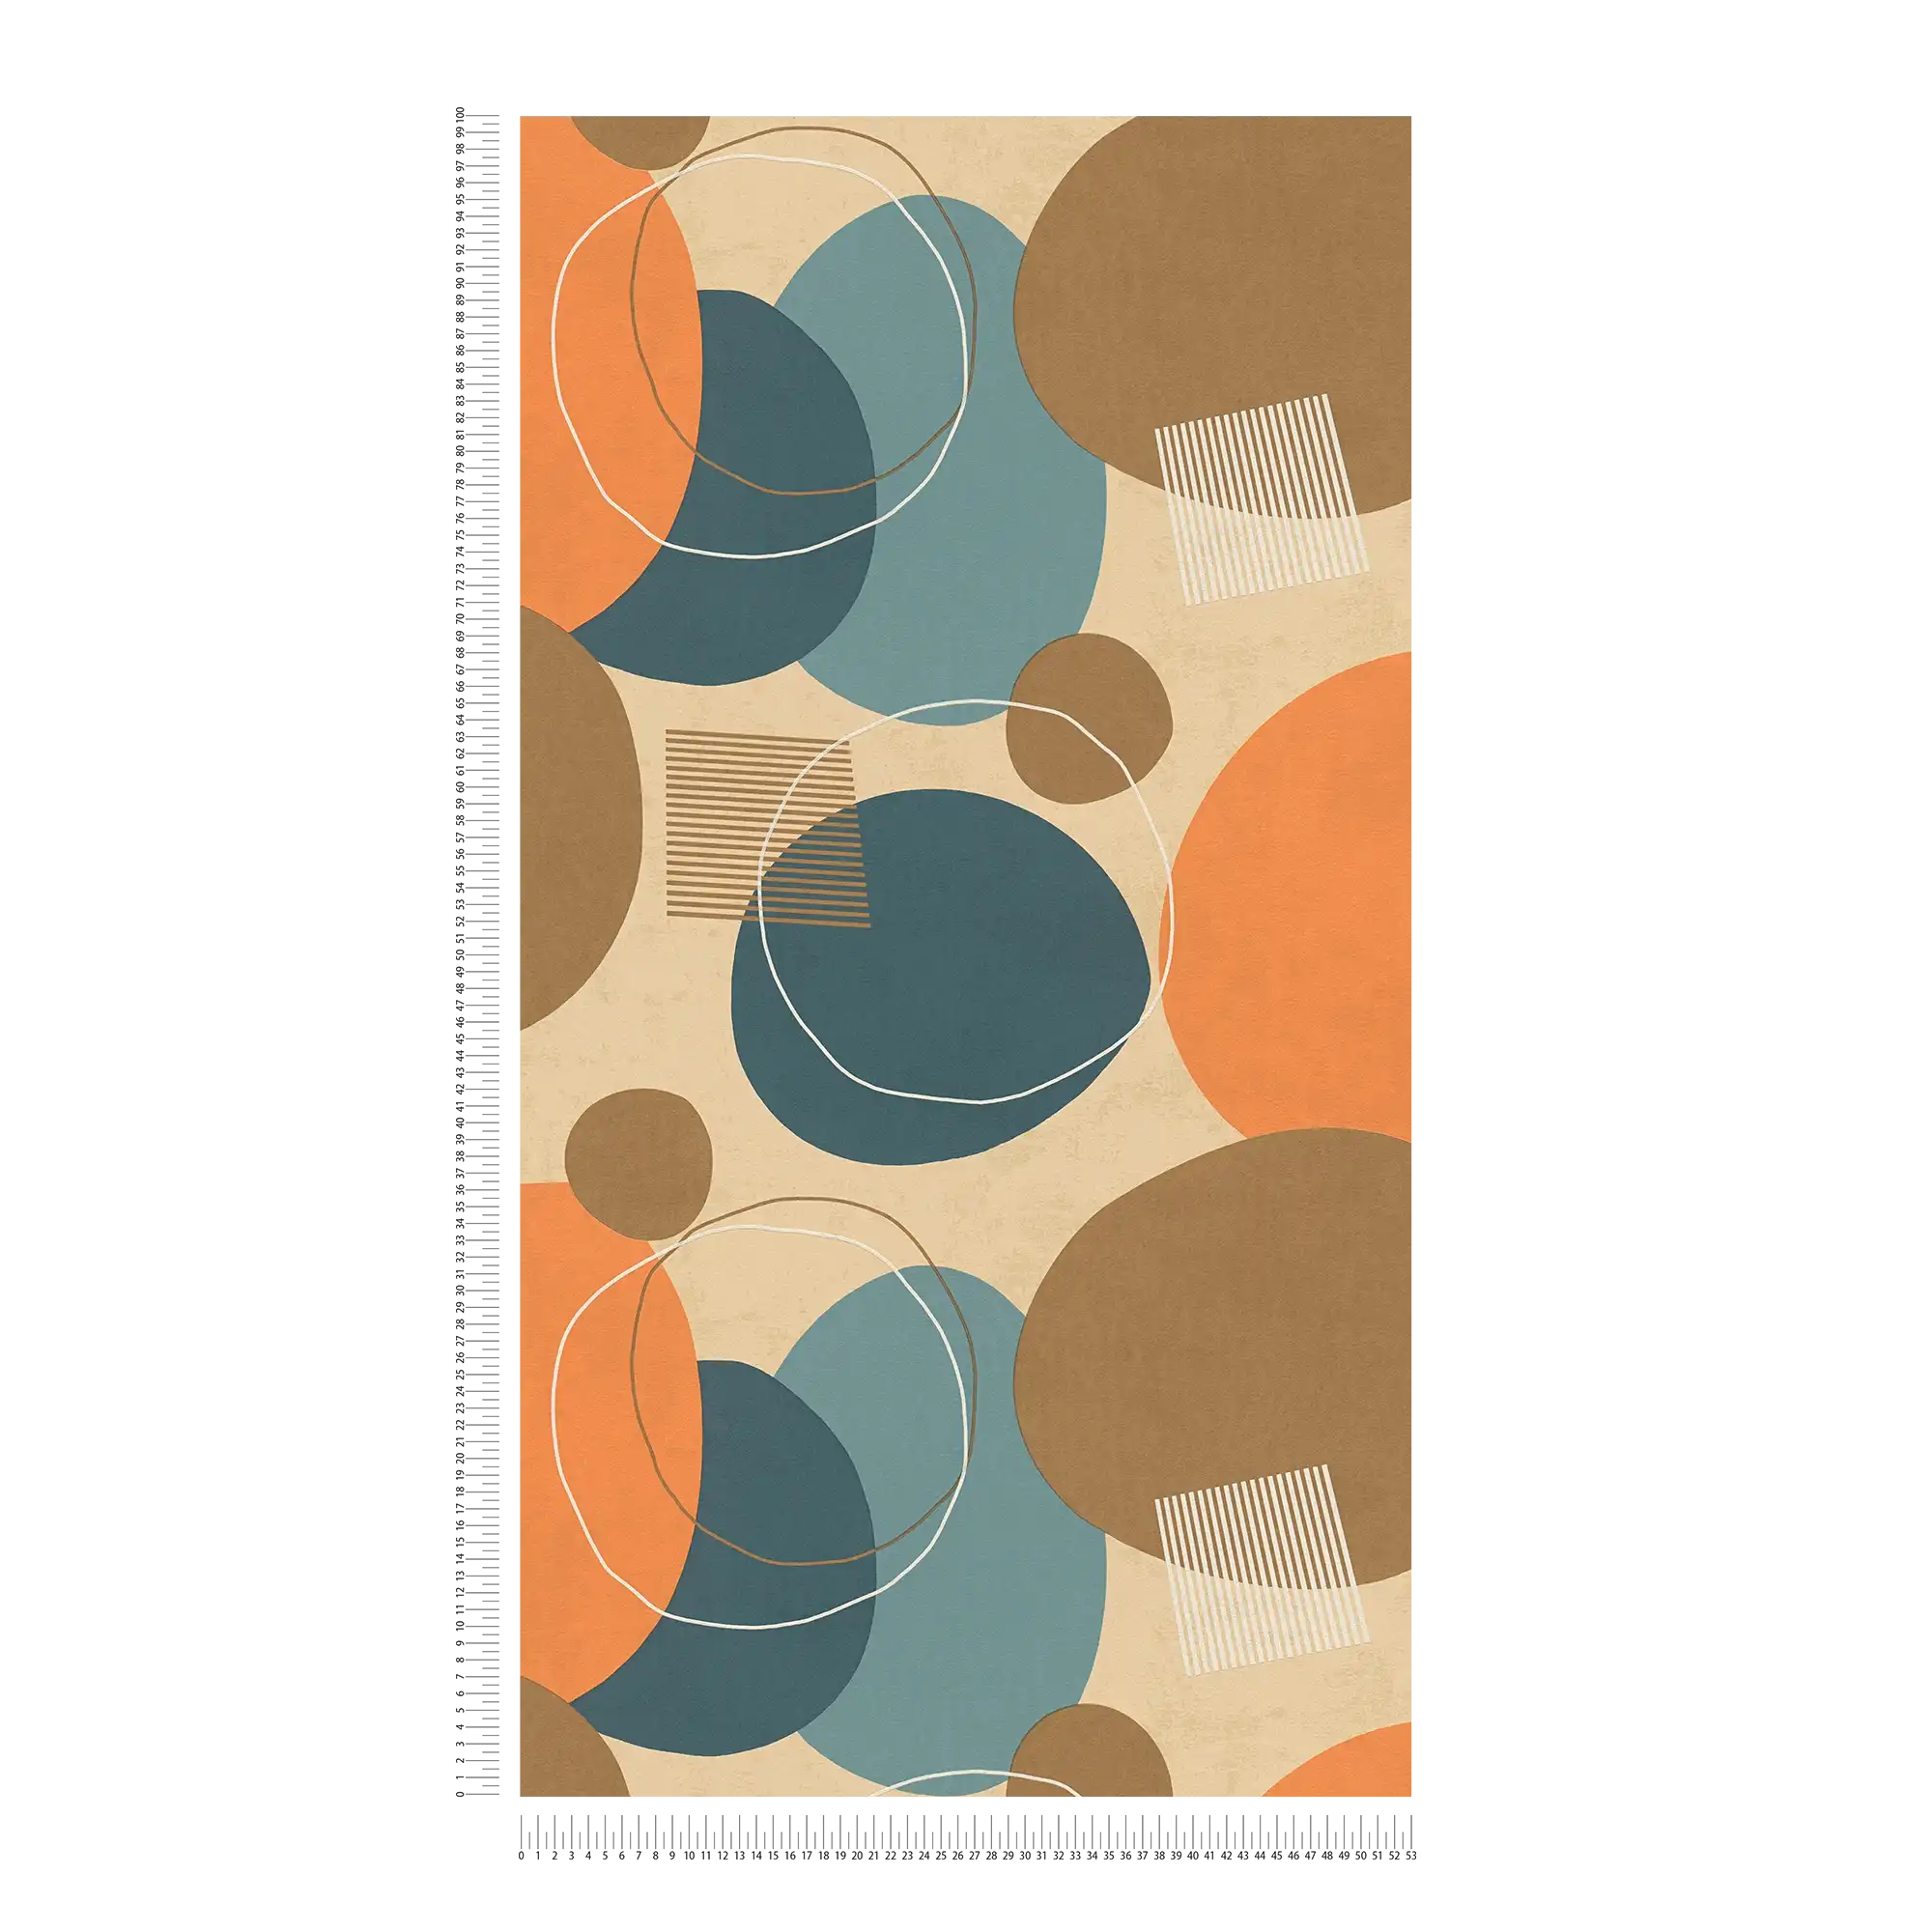             Retro Behang Mid Eeuw Modern Patroon - Oranje, Bruin, Blauw
        